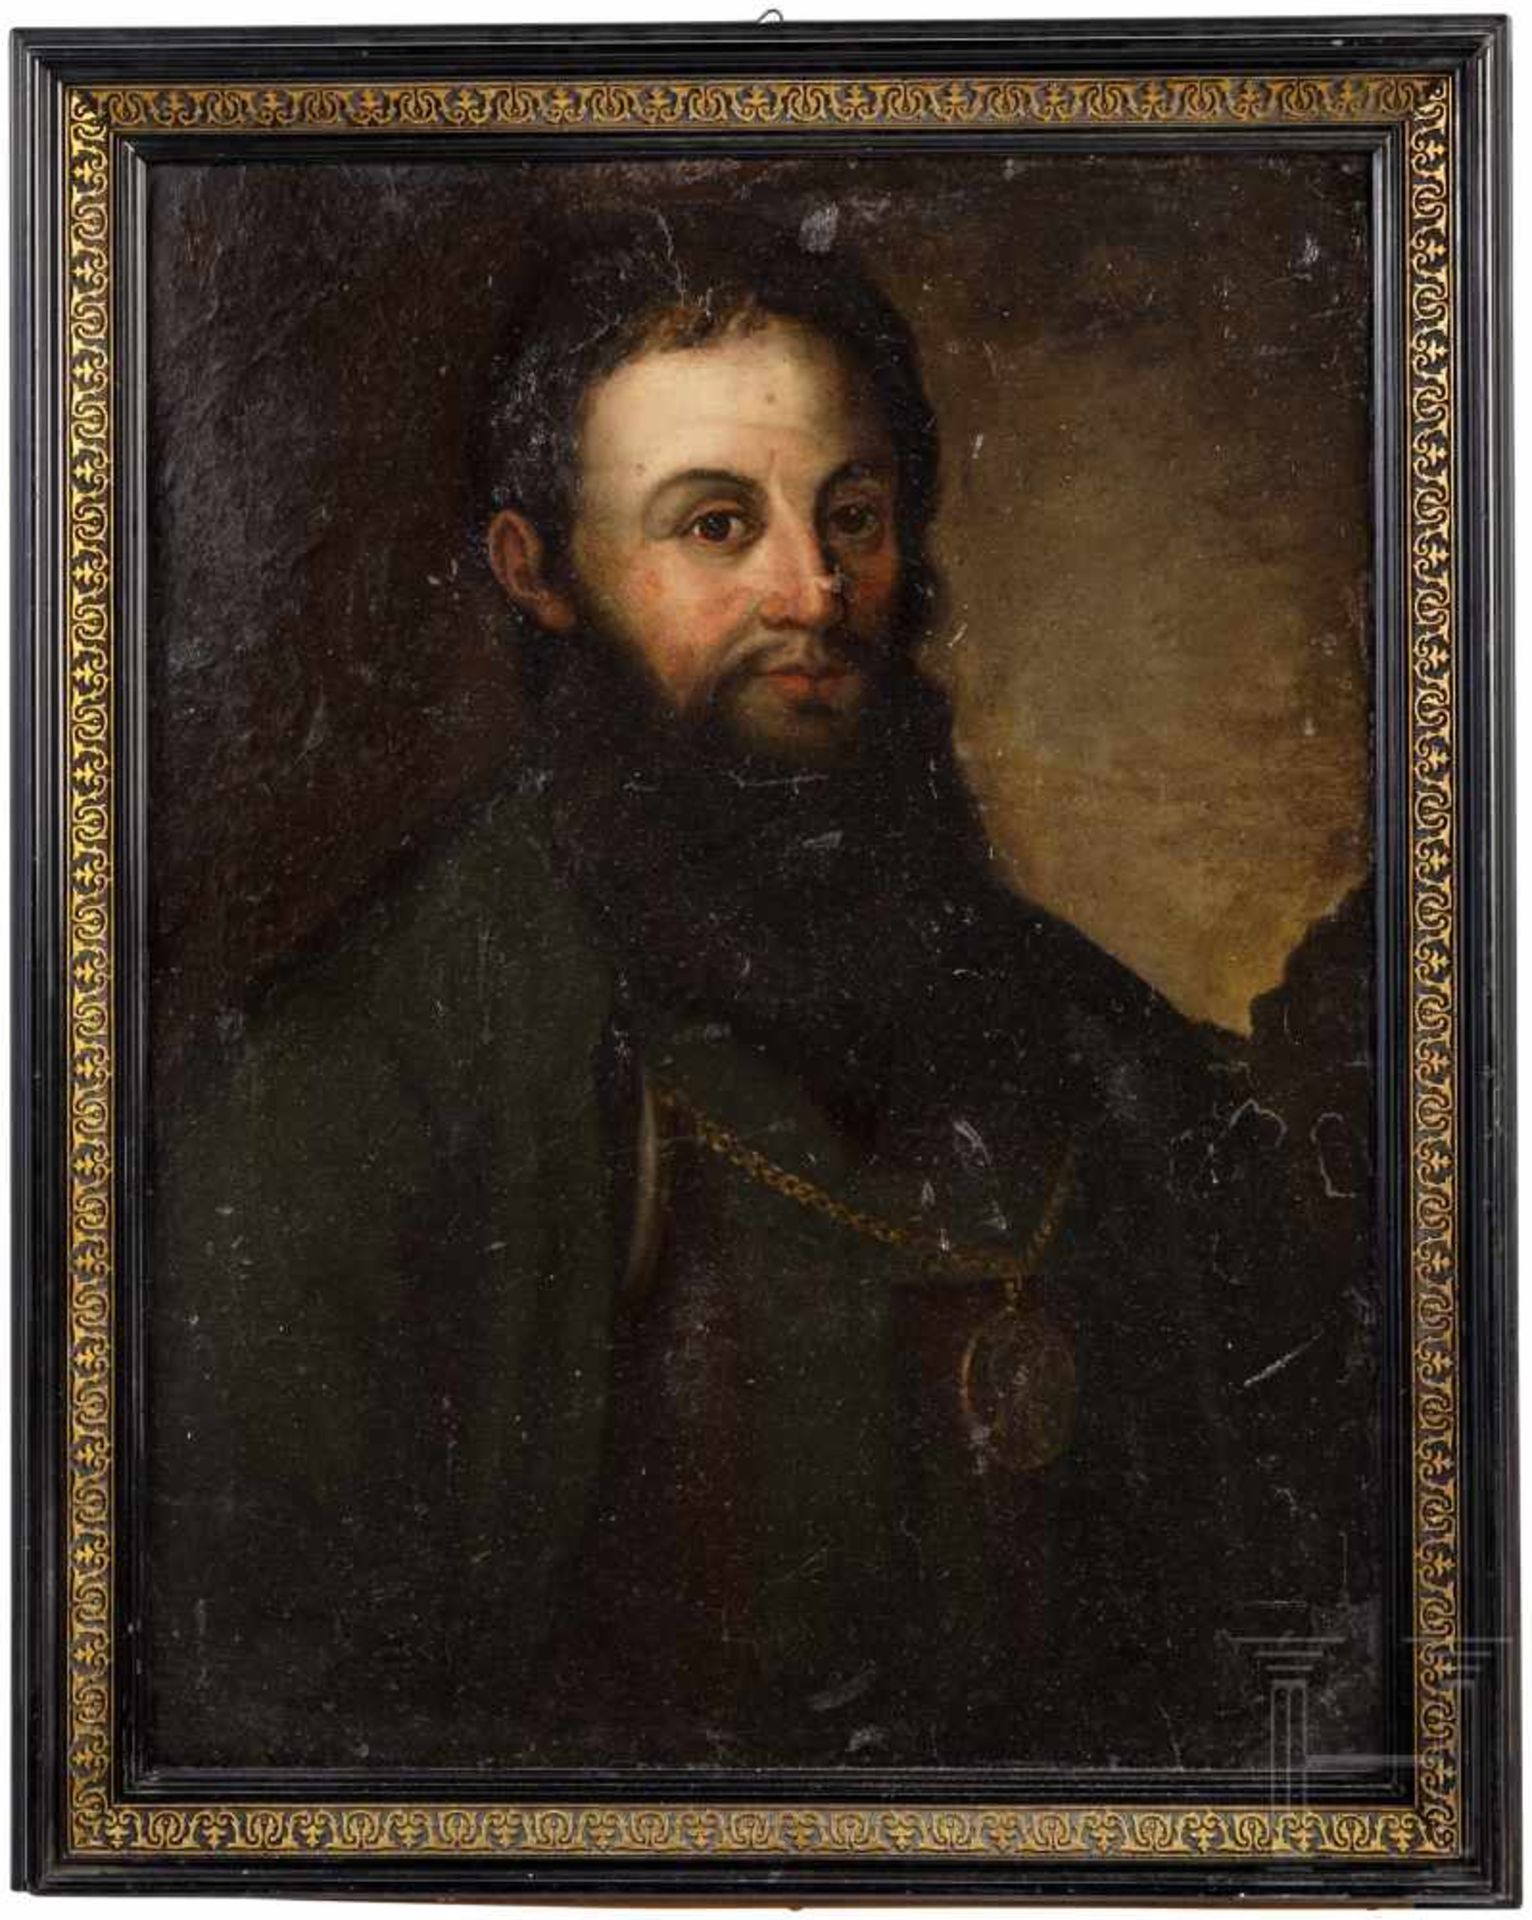 Portrait des Andreas Hofer, Tirol, 2. Hälfte 19. Jhdt.Öl auf Presspappe. Brustbild des bekannten